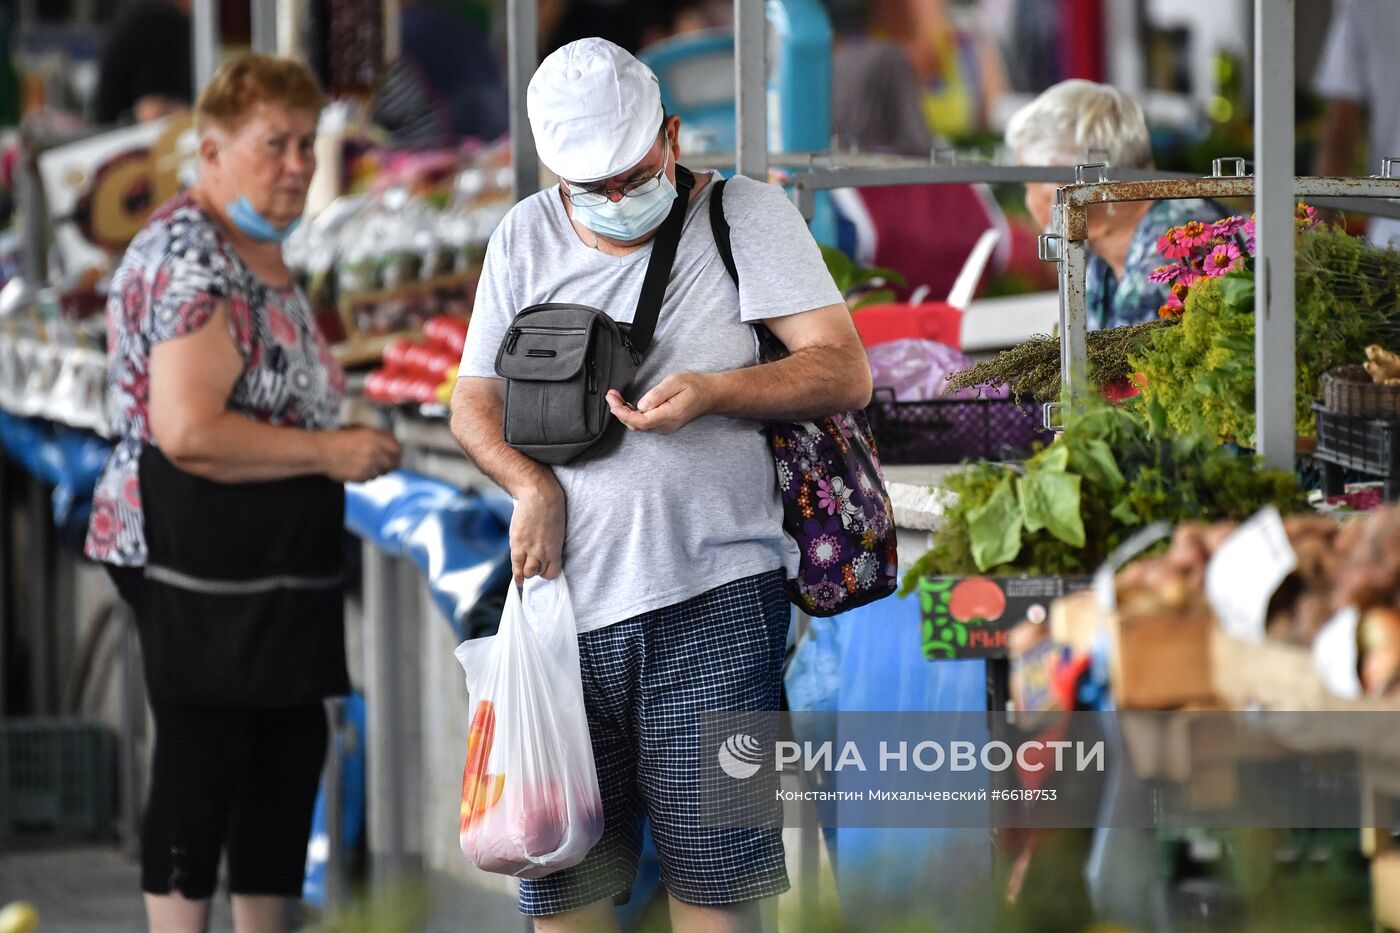 Центральный овощной рынок в Симферополе